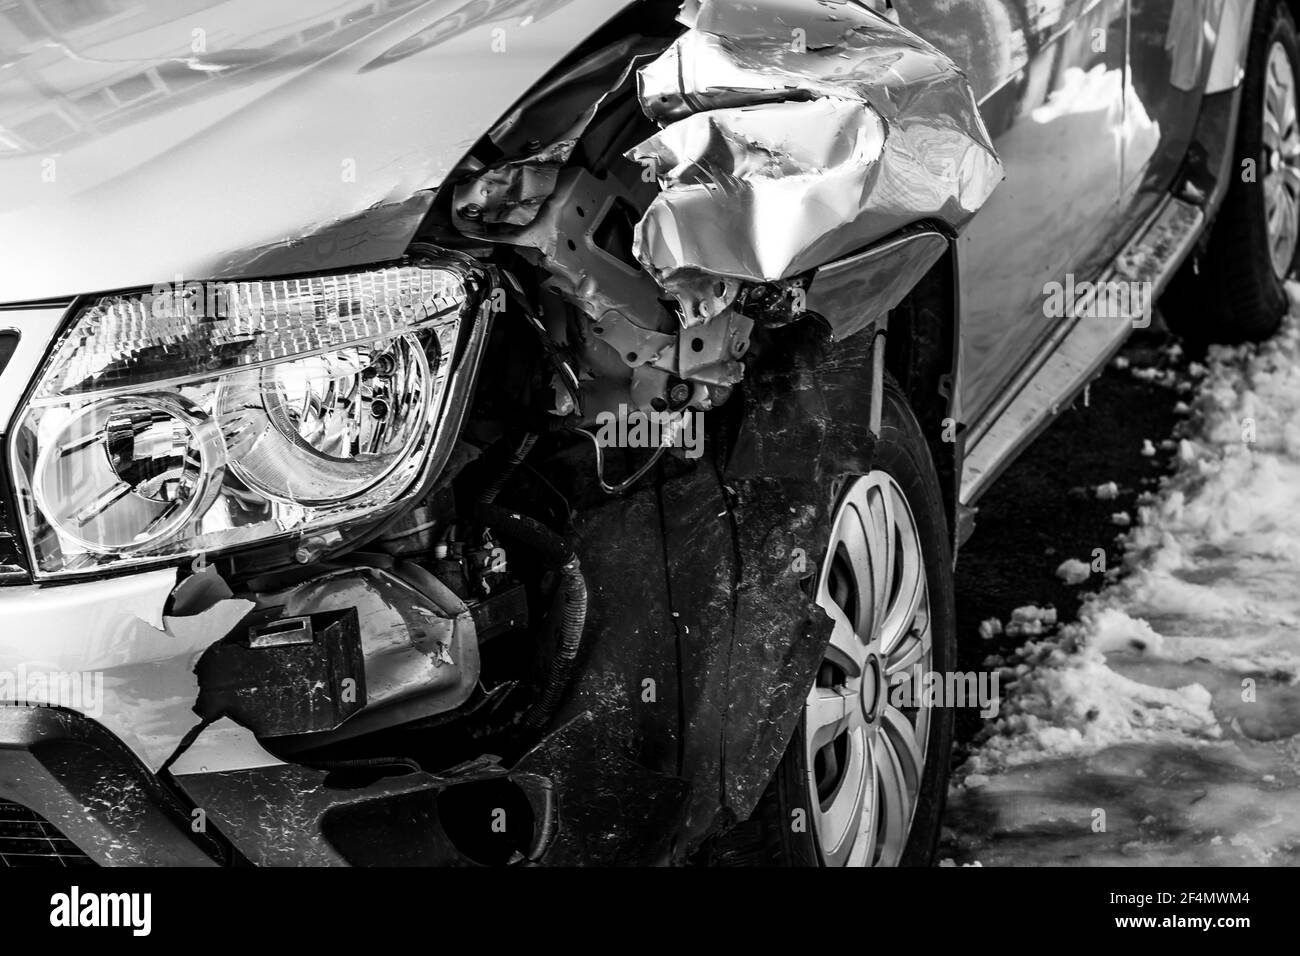 Autos chocados Imágenes de stock en blanco y negro - Alamy